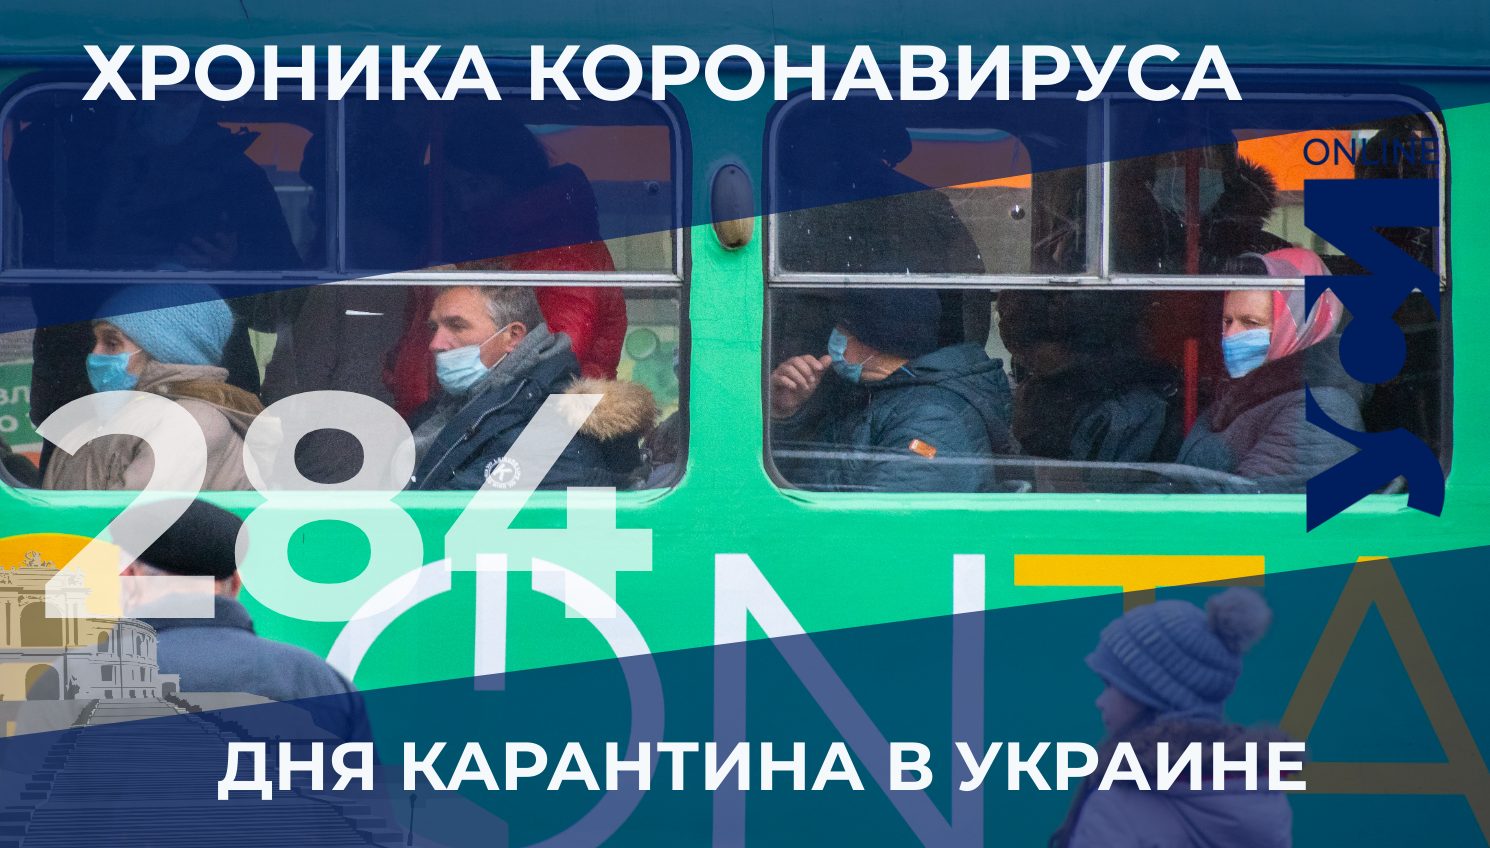 COVID-19: Одесский регион по числу заболевших опять в тройке лидеров «фото»